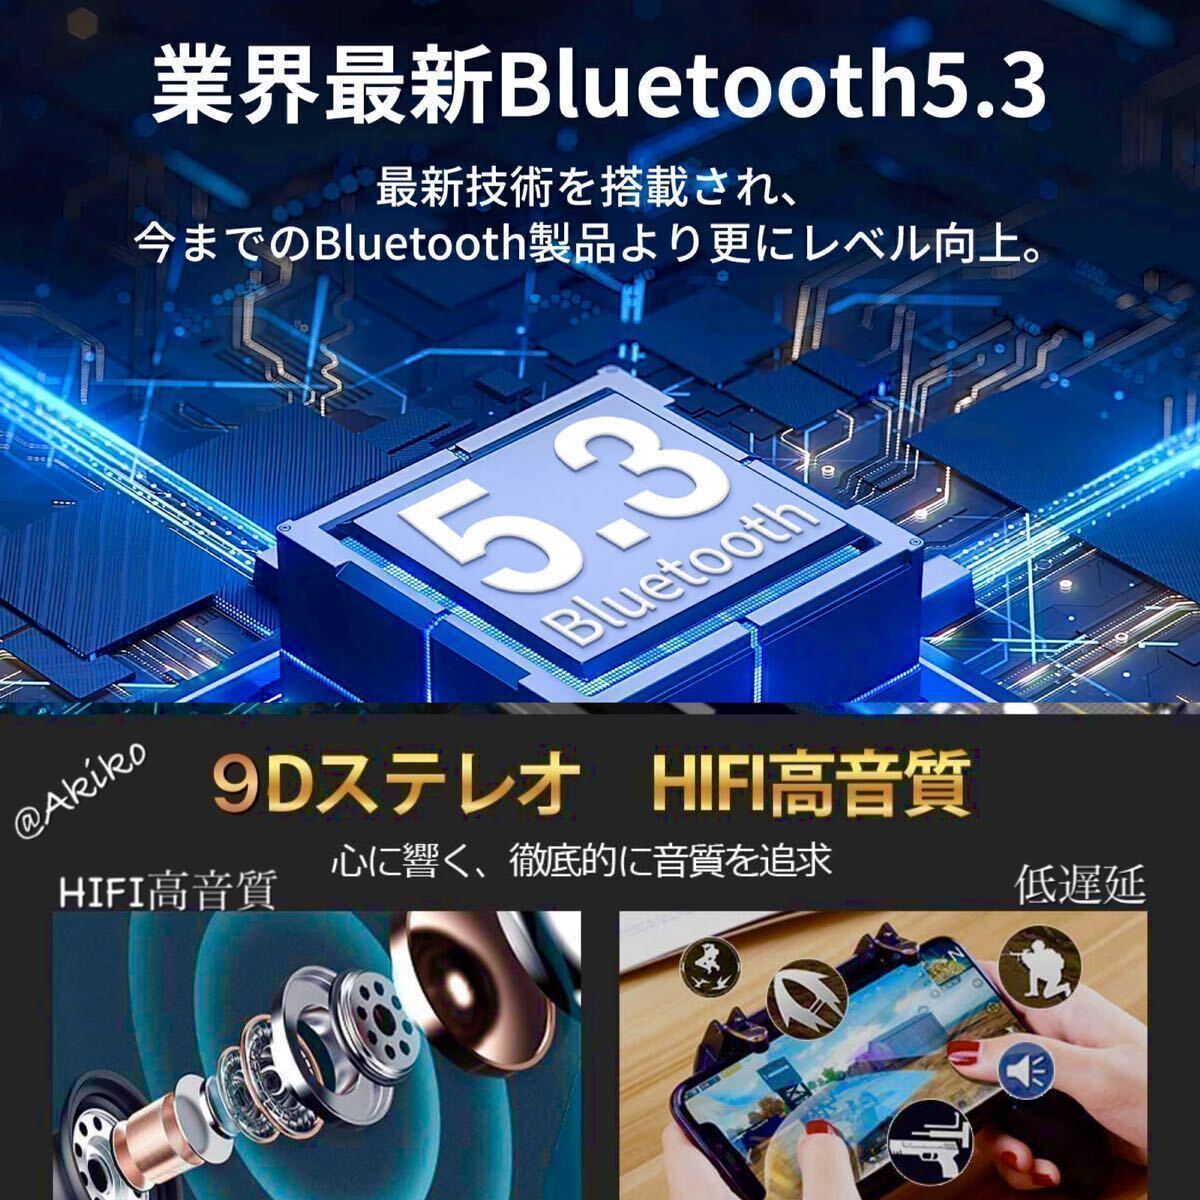 Bluetooth 5.3ワイヤレスイヤホン、バッテリー大容量2200mAh 防水!! iOS アンドロイド対応！_画像2